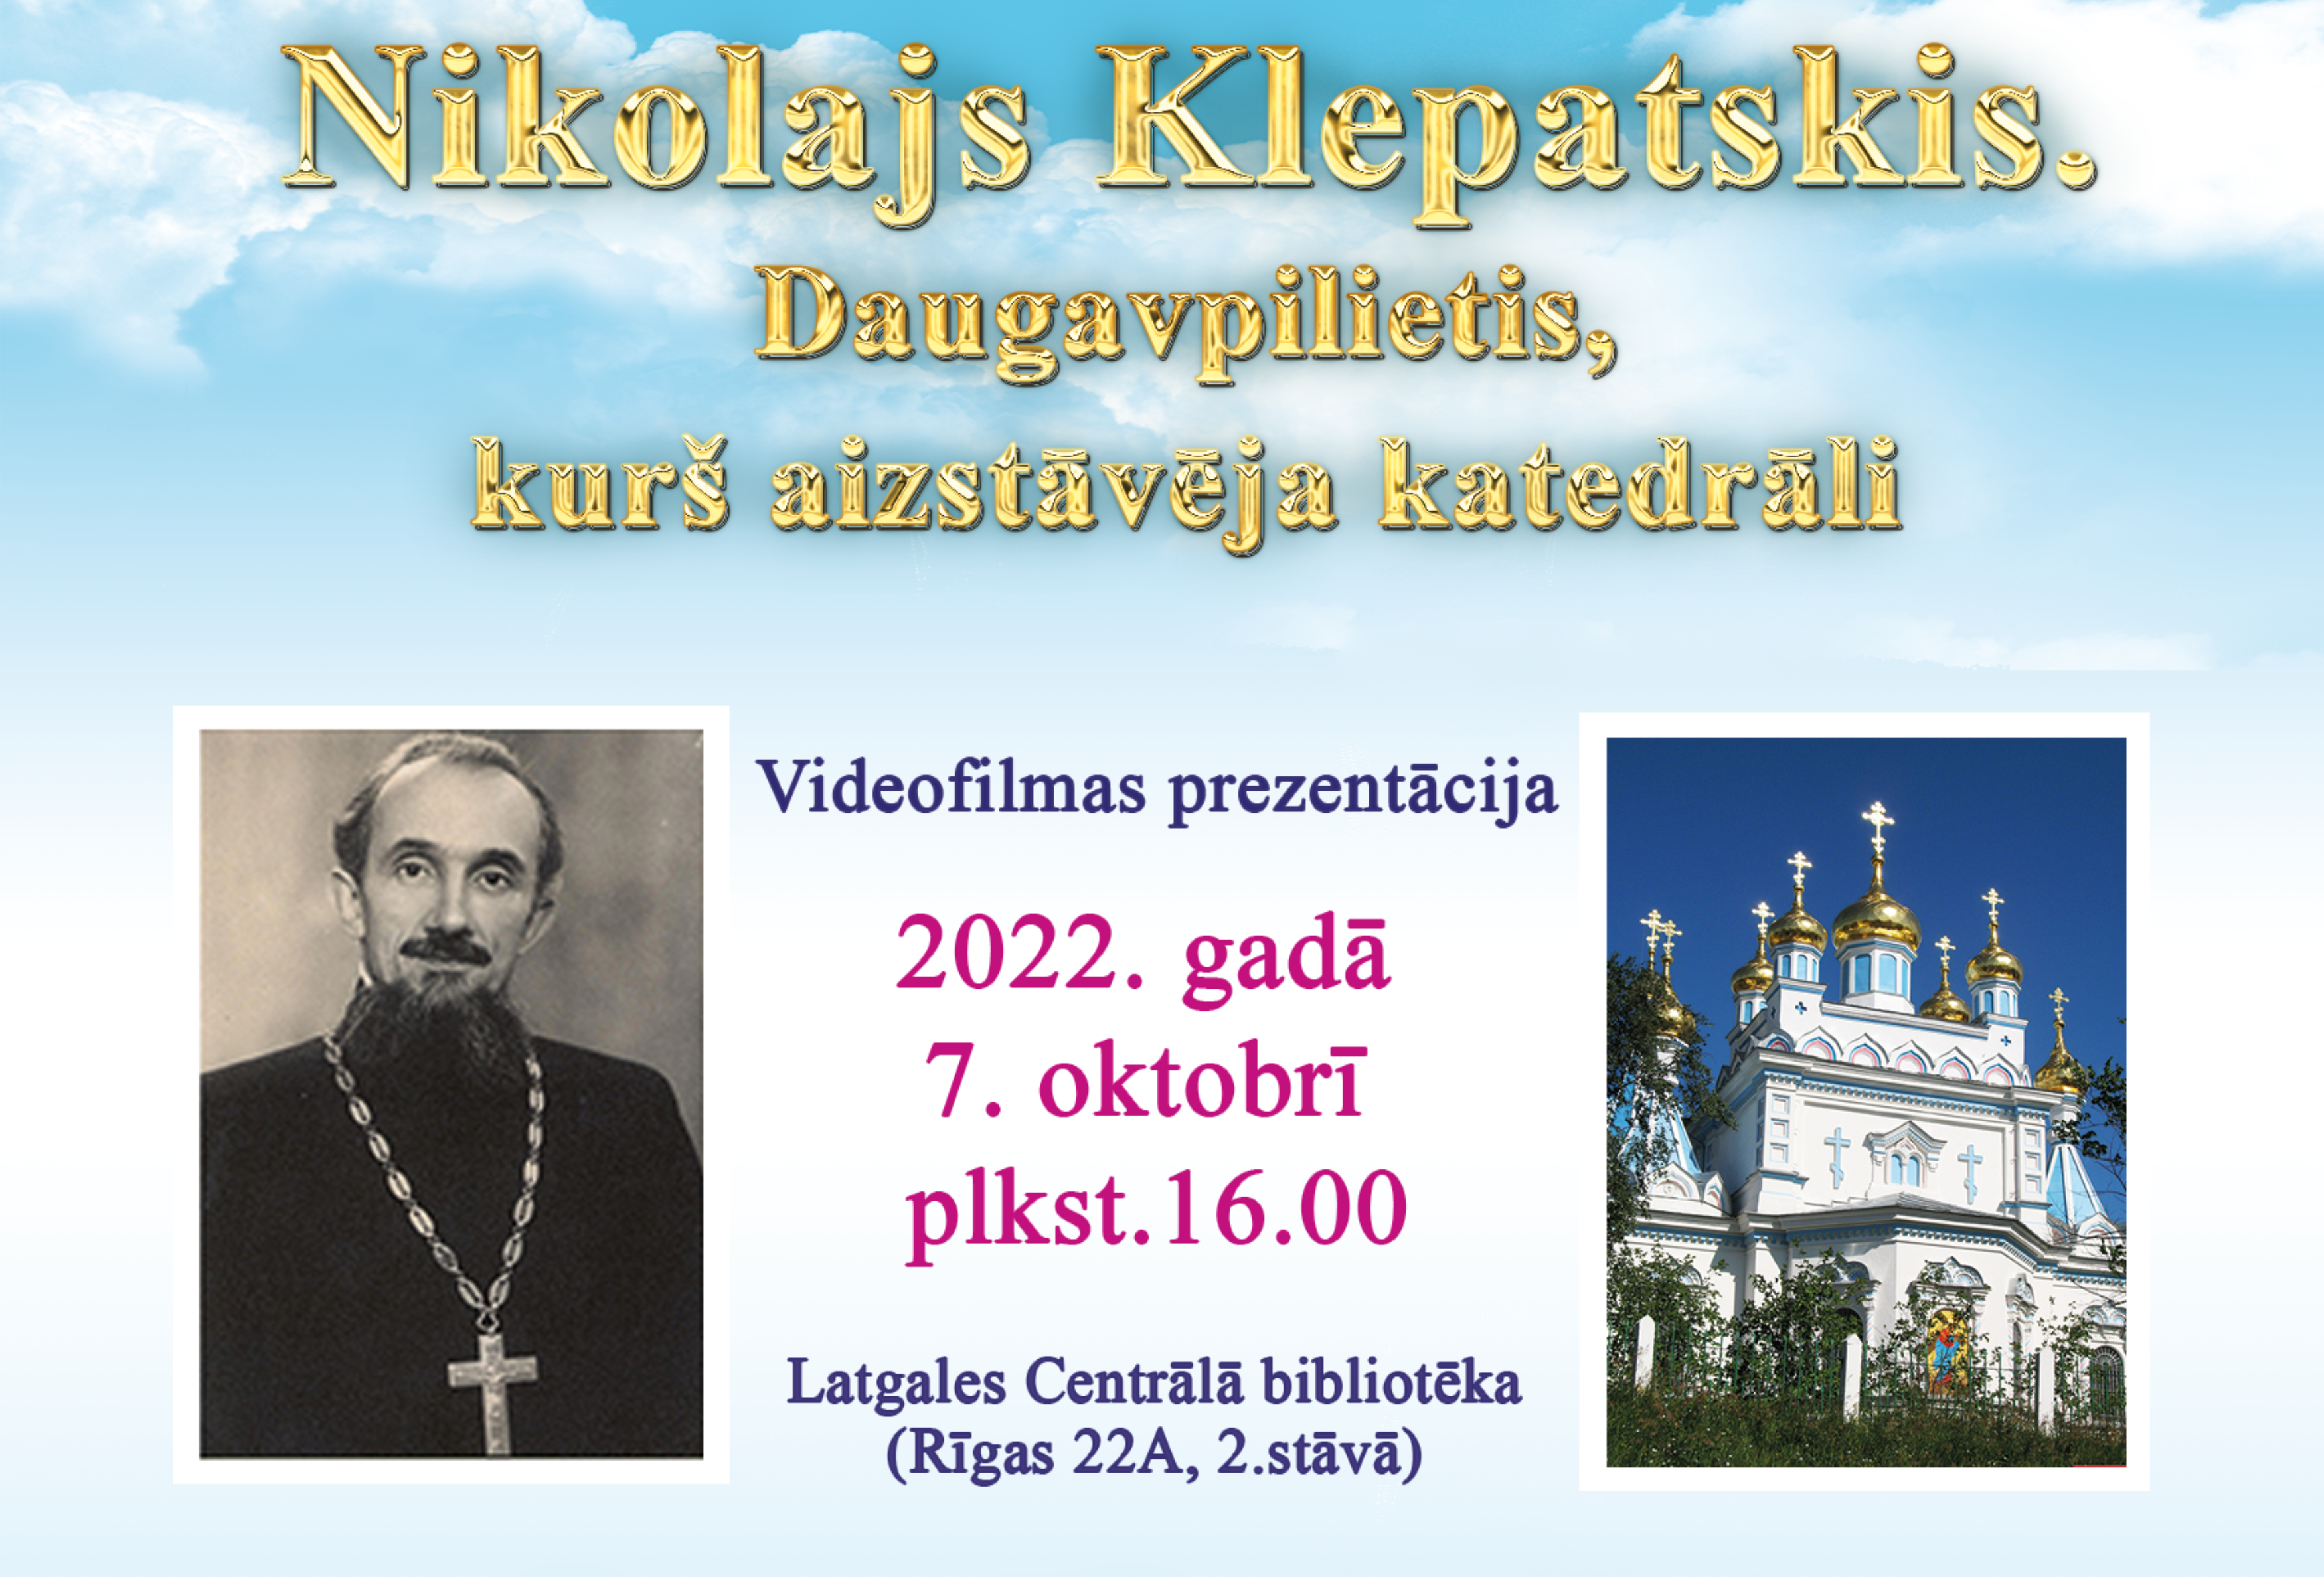 Krievu kultūras centrs prezentē videofilmu par priesteri Nikolaju Klepatski